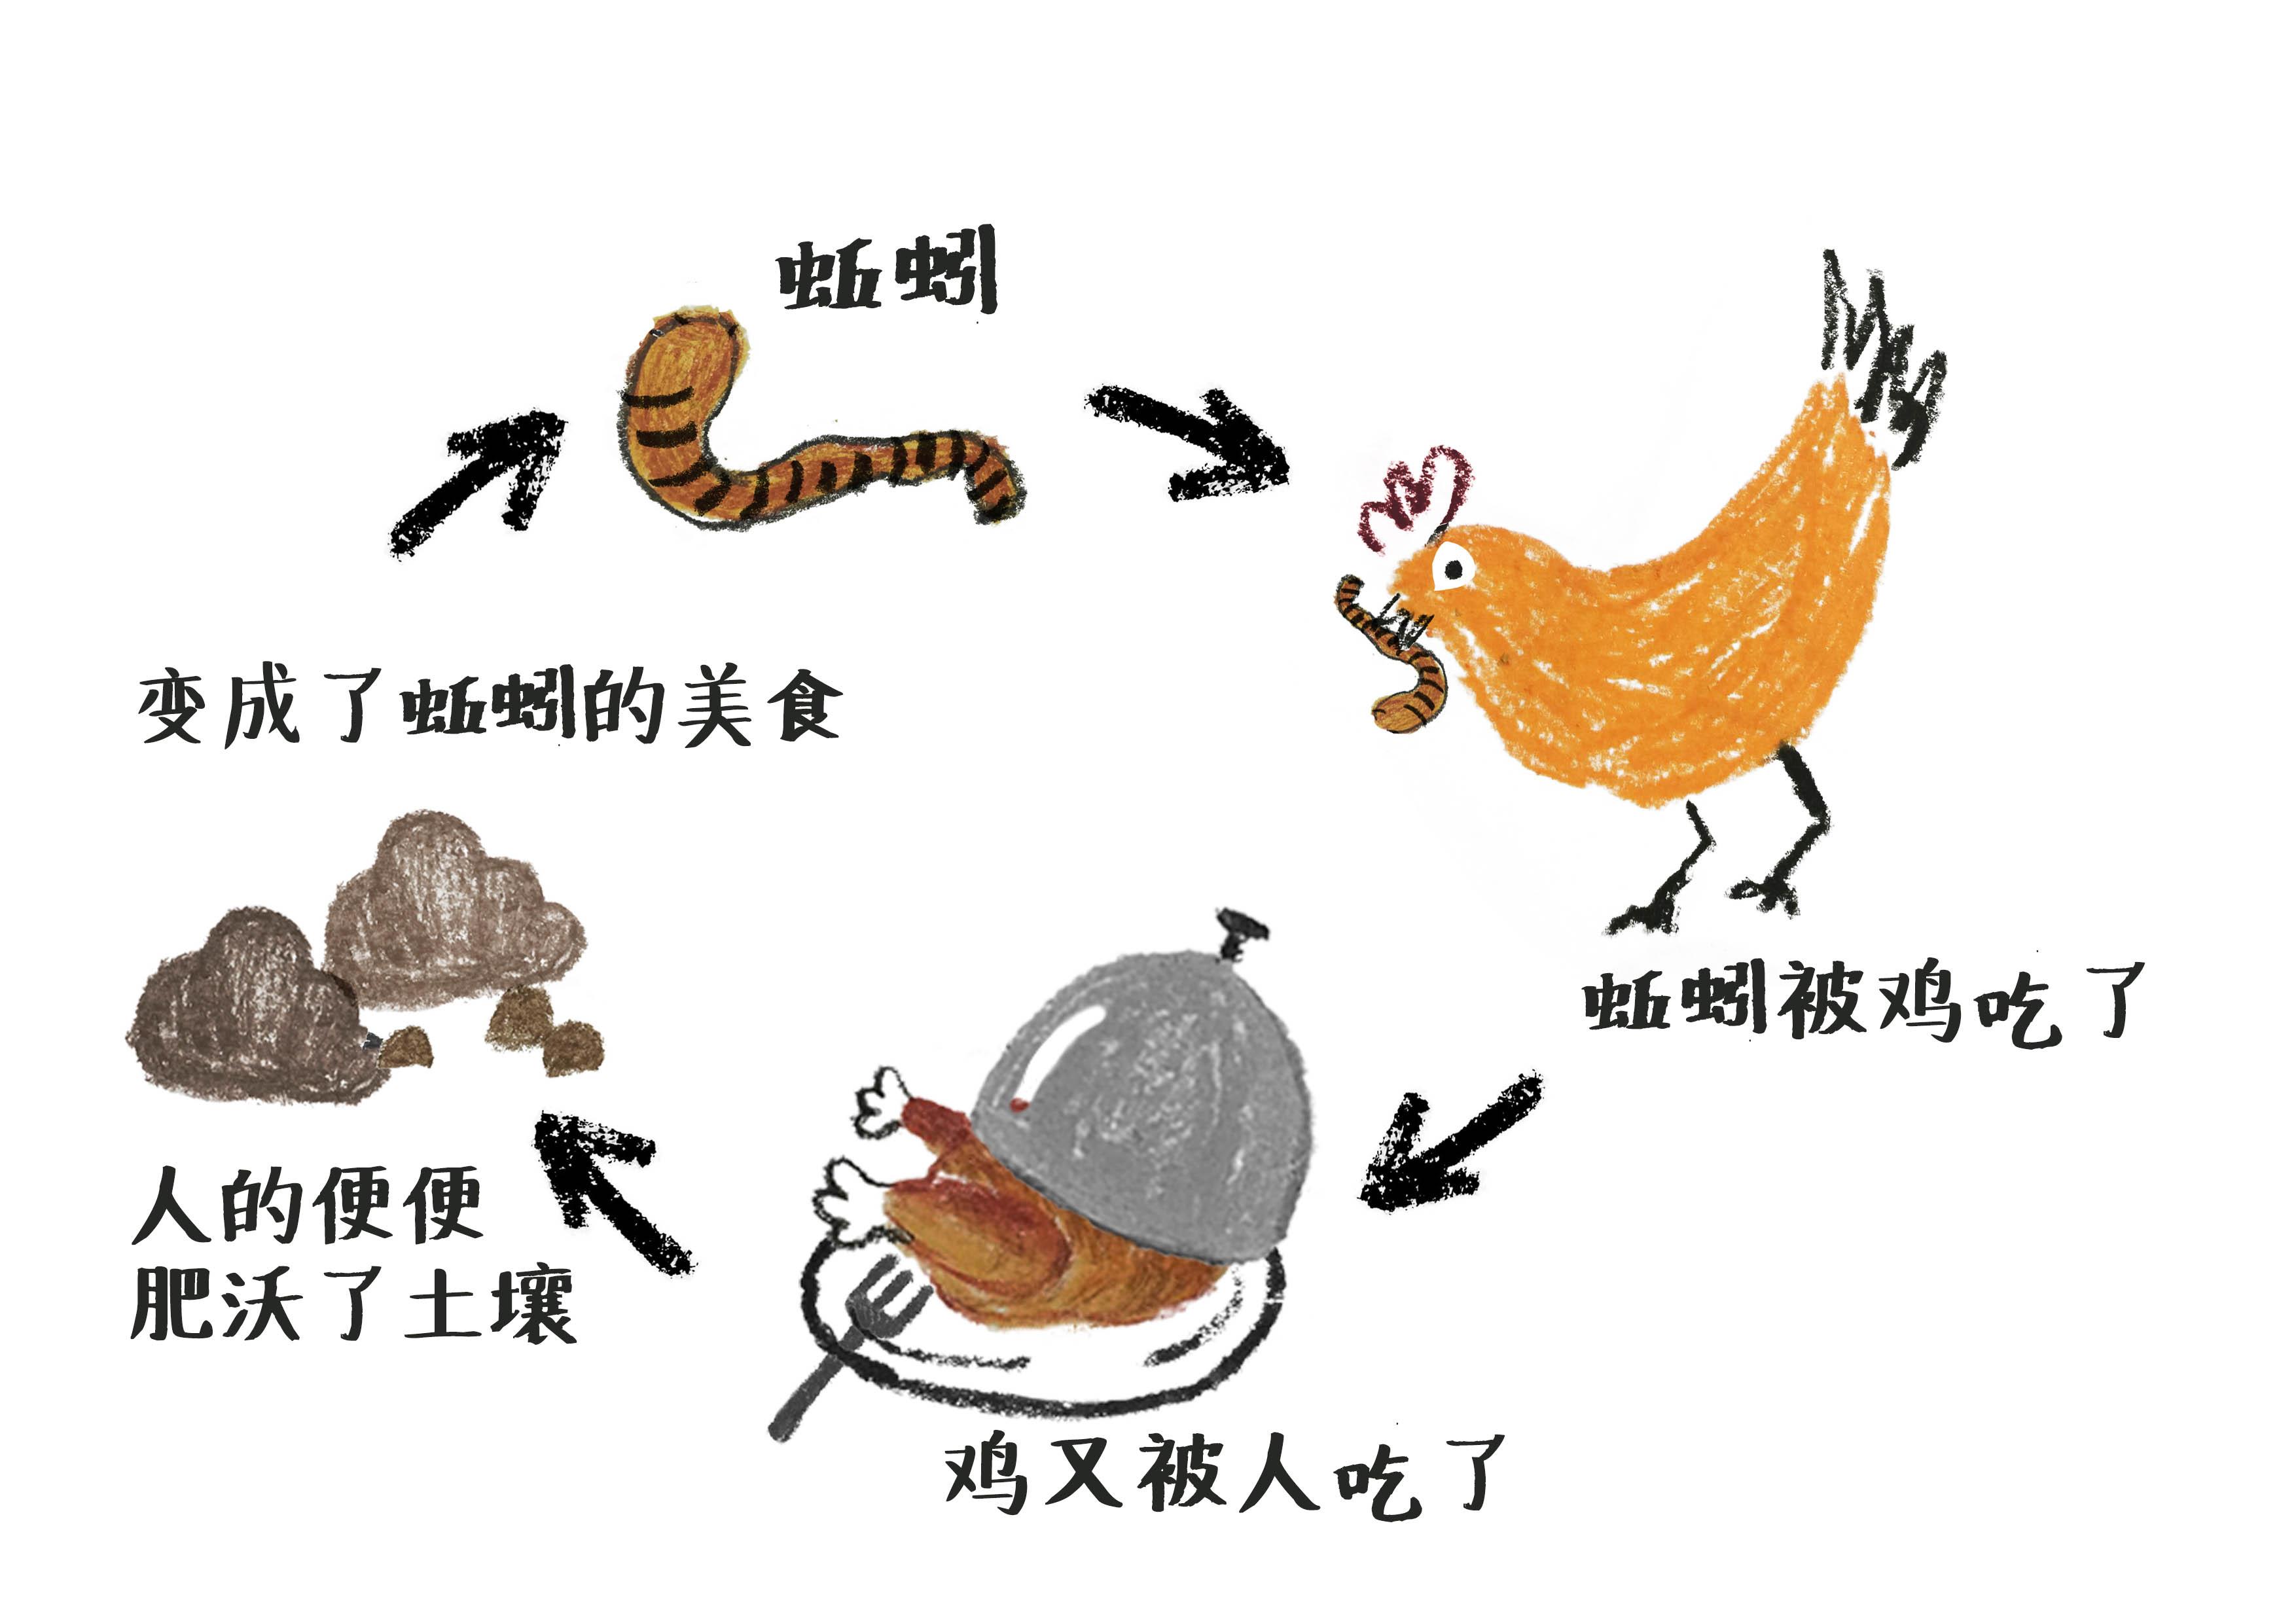 食物链循环的例子图片图片